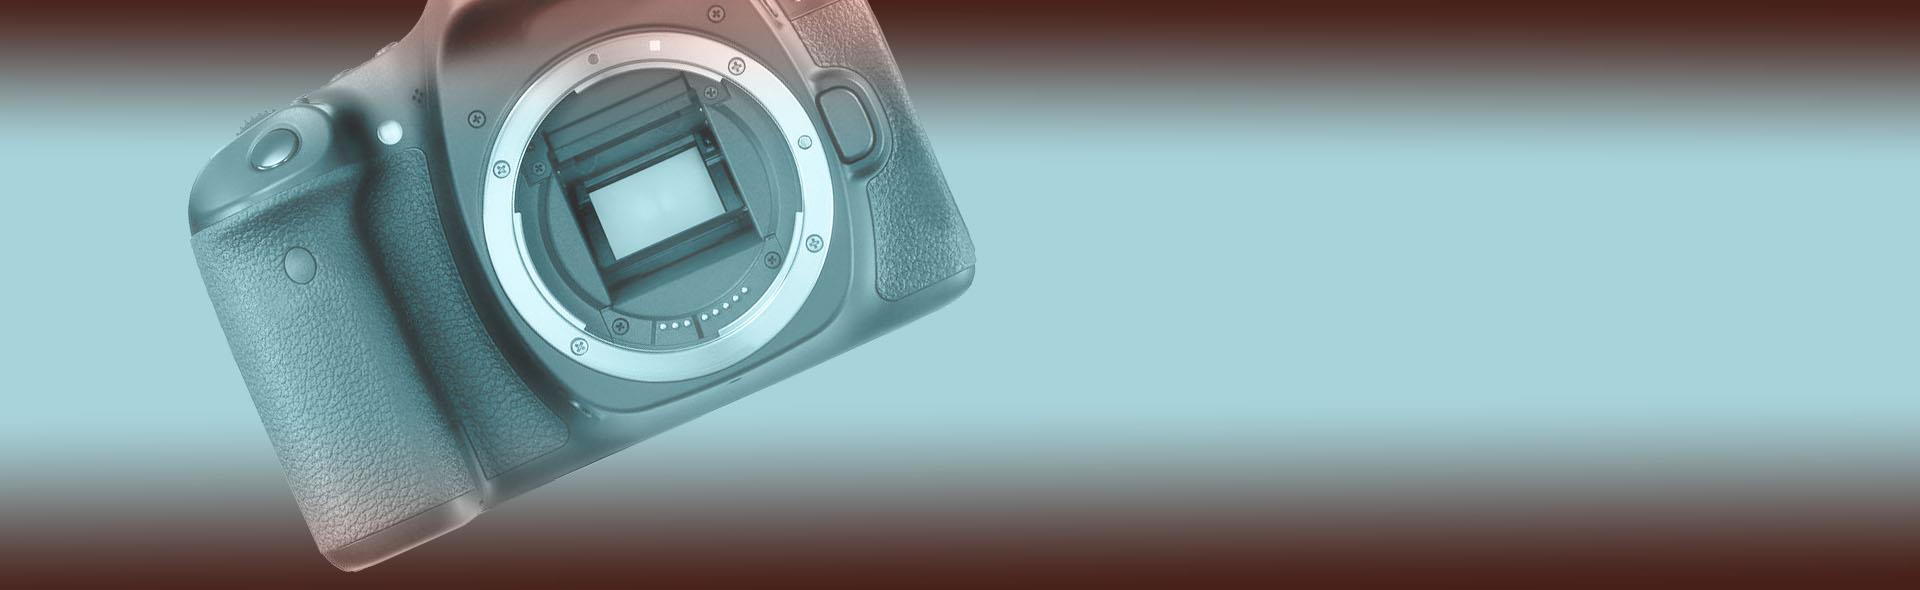 نحوه کارکرد حسگر ( سنسور ) در دوربین های عکاسی دیجیتال <br>Camera Sensor Function